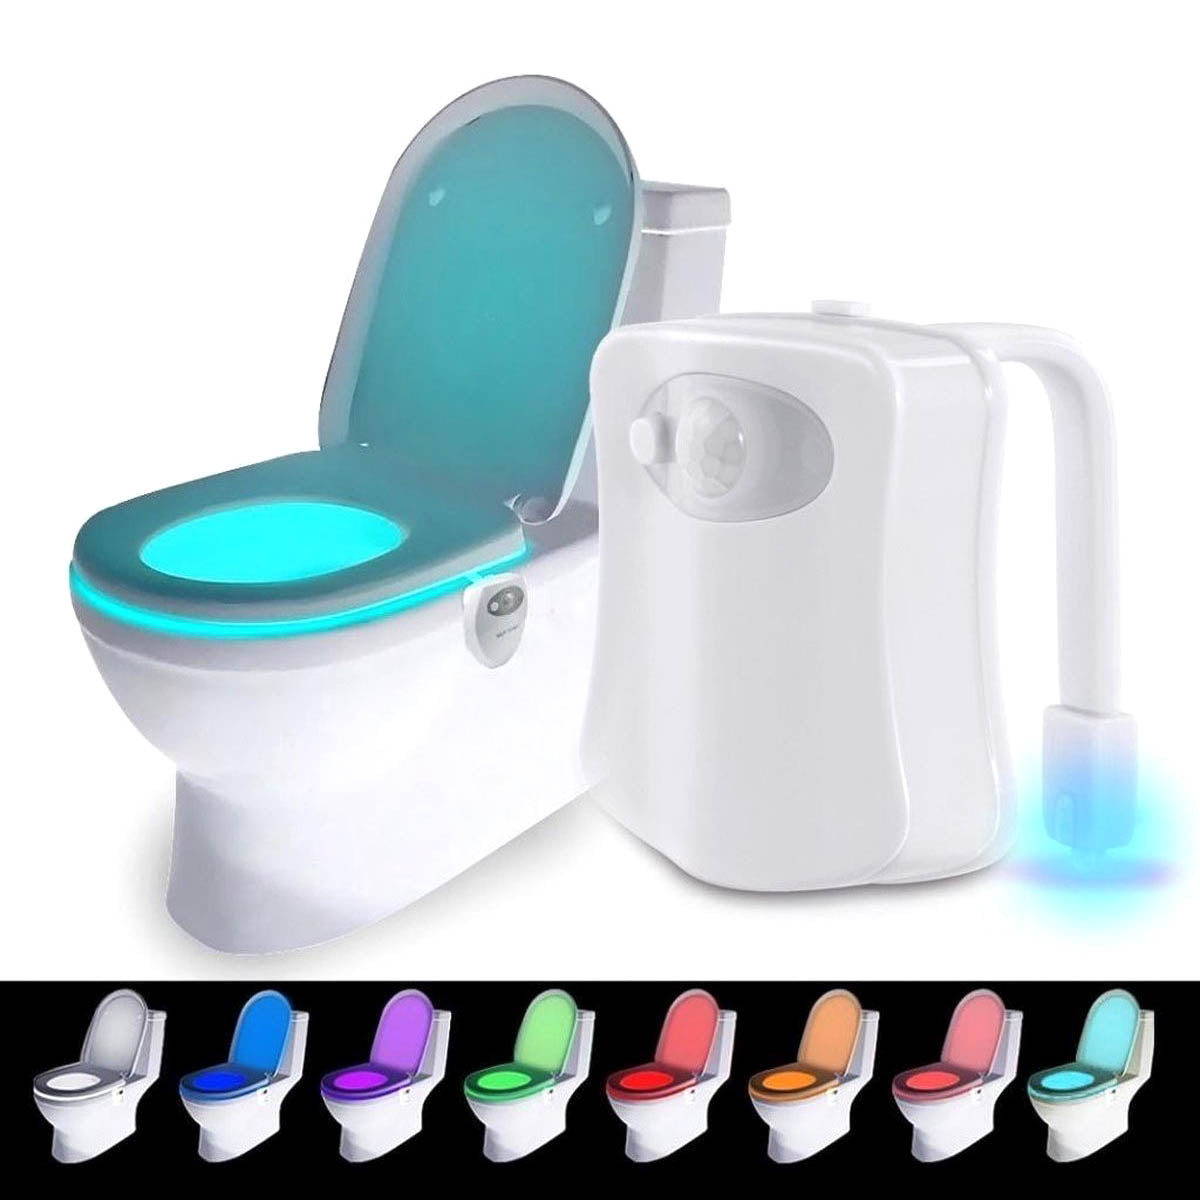 Ariko Toiletten-LED-Beleuchtung - 8 Farben - Bewegungssensor - Batterieschonung - Verschiedene Lichtfarben - Inkl. Batterien